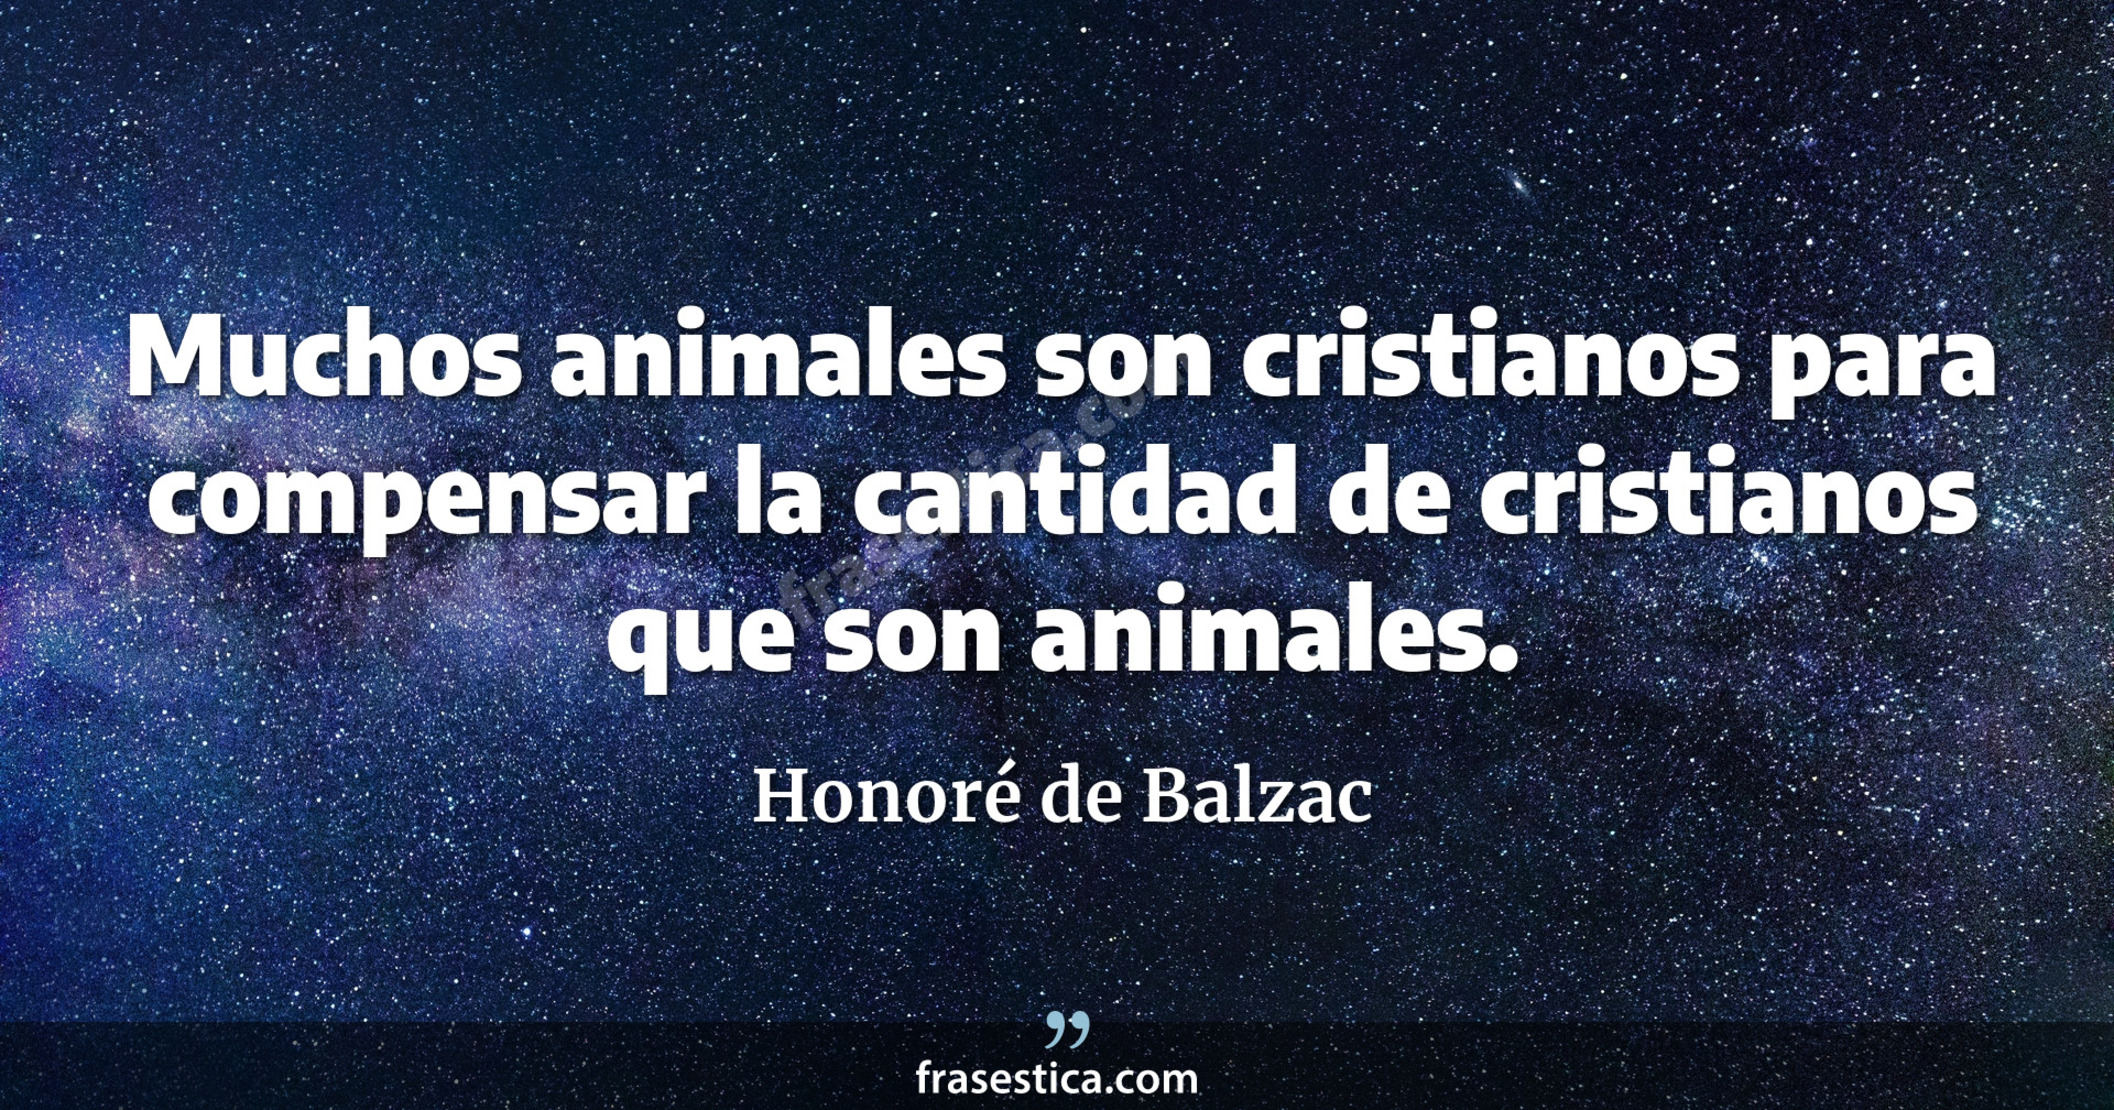 Muchos animales son cristianos para compensar la cantidad de cristianos que son animales. - Honoré de Balzac